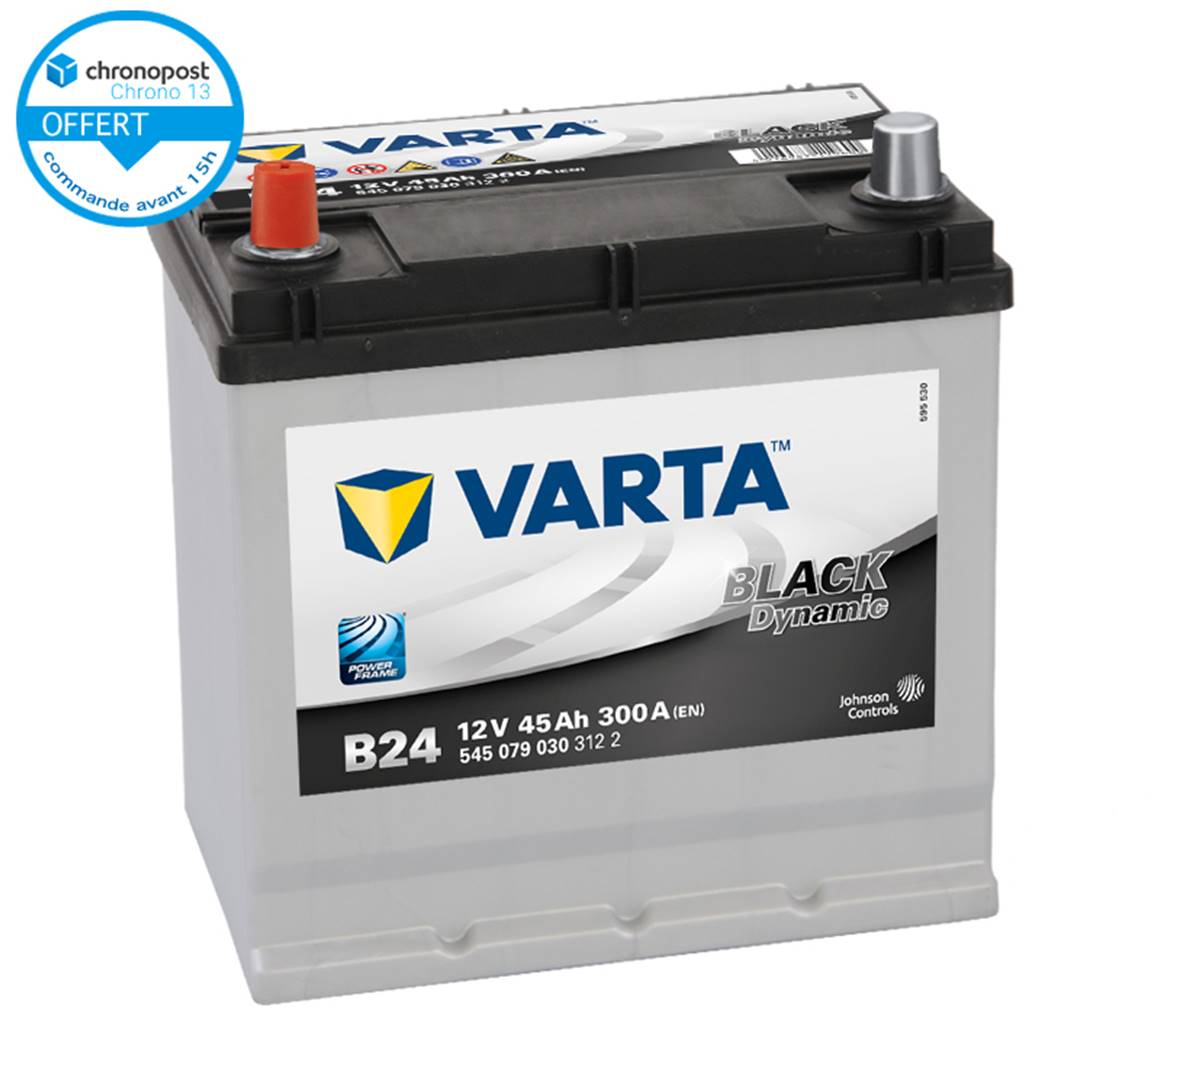 Batterie auto B24 12V 45ah/300A VARTA Black dynamic, batterie de démarrage  auto, VL, Voiture